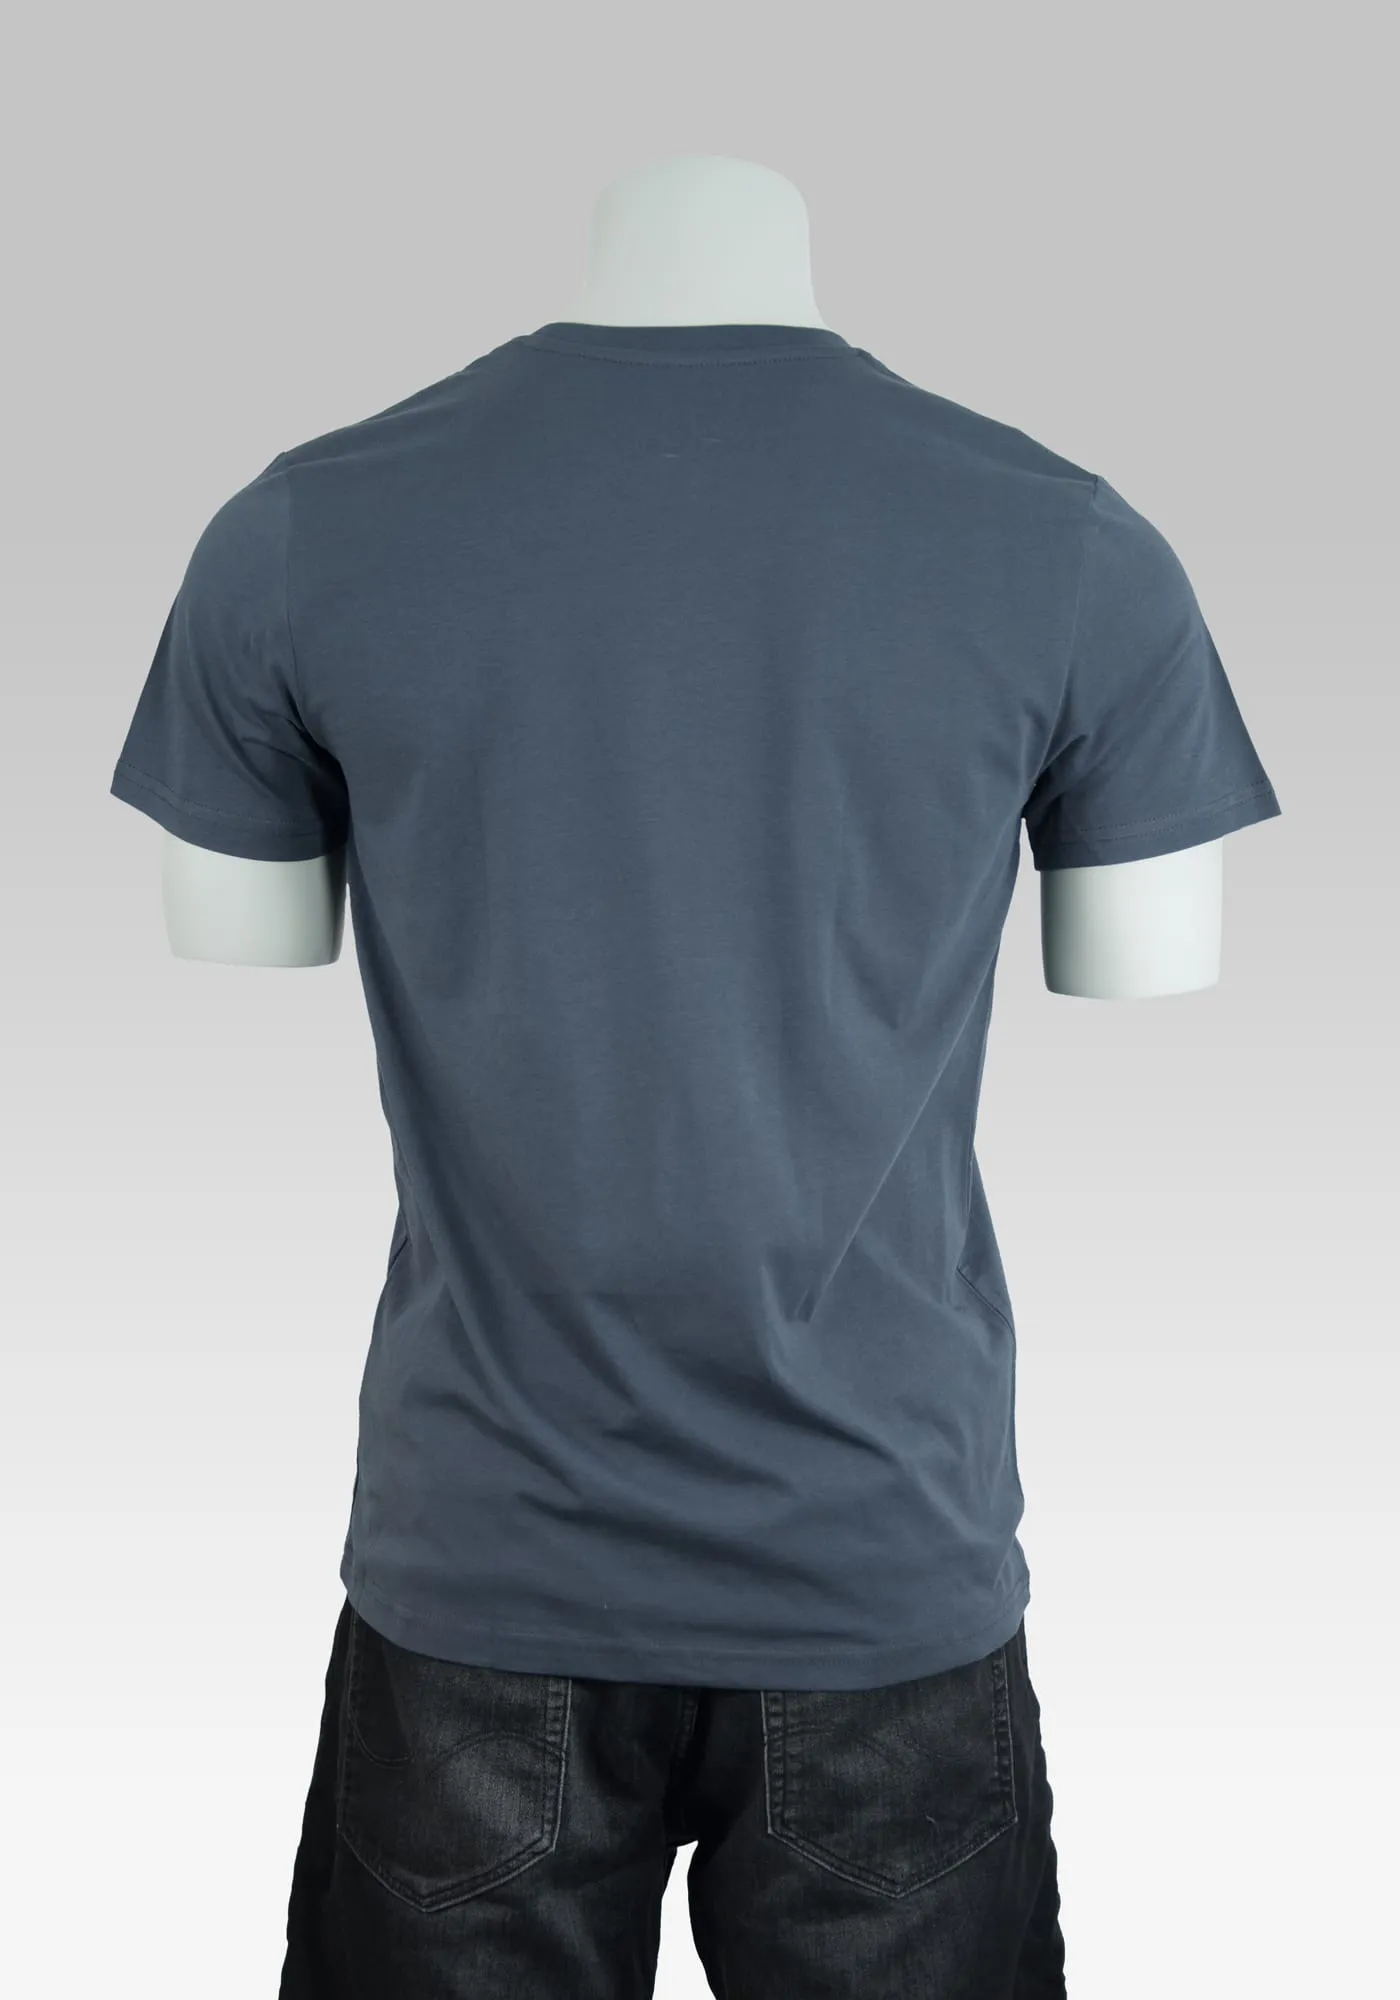 T-Shirt Slamdunk in india ink grey auf der Hollowpuppe von hinten